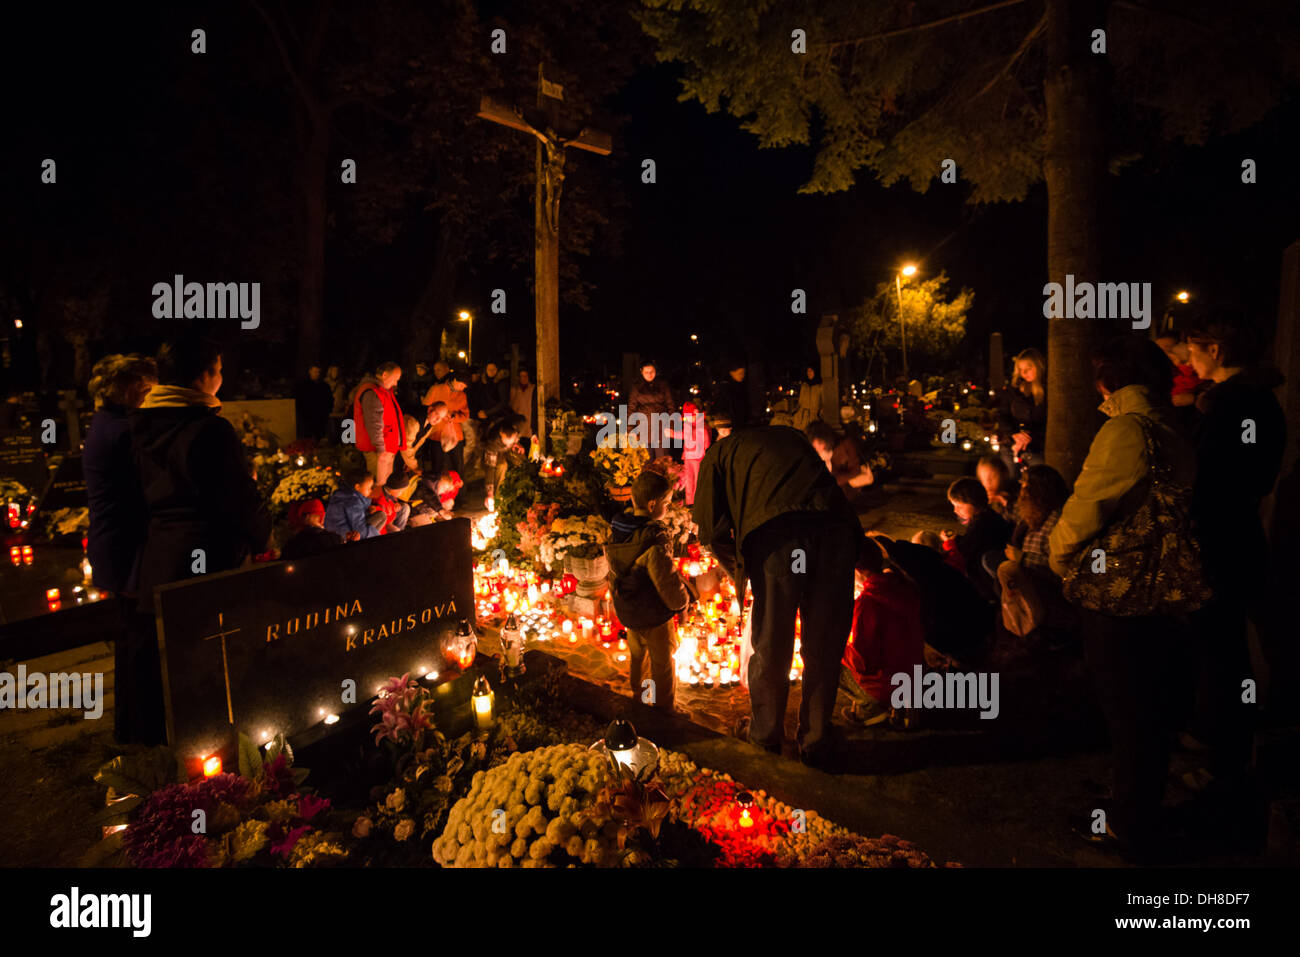 PEZINOK, Slowakei - NOVEMBER 1: Menschen stehen und beten vor Kreuz mit brennenden Kerzen am Boden während Allerheiligen am 1. November 2013. Stockfoto